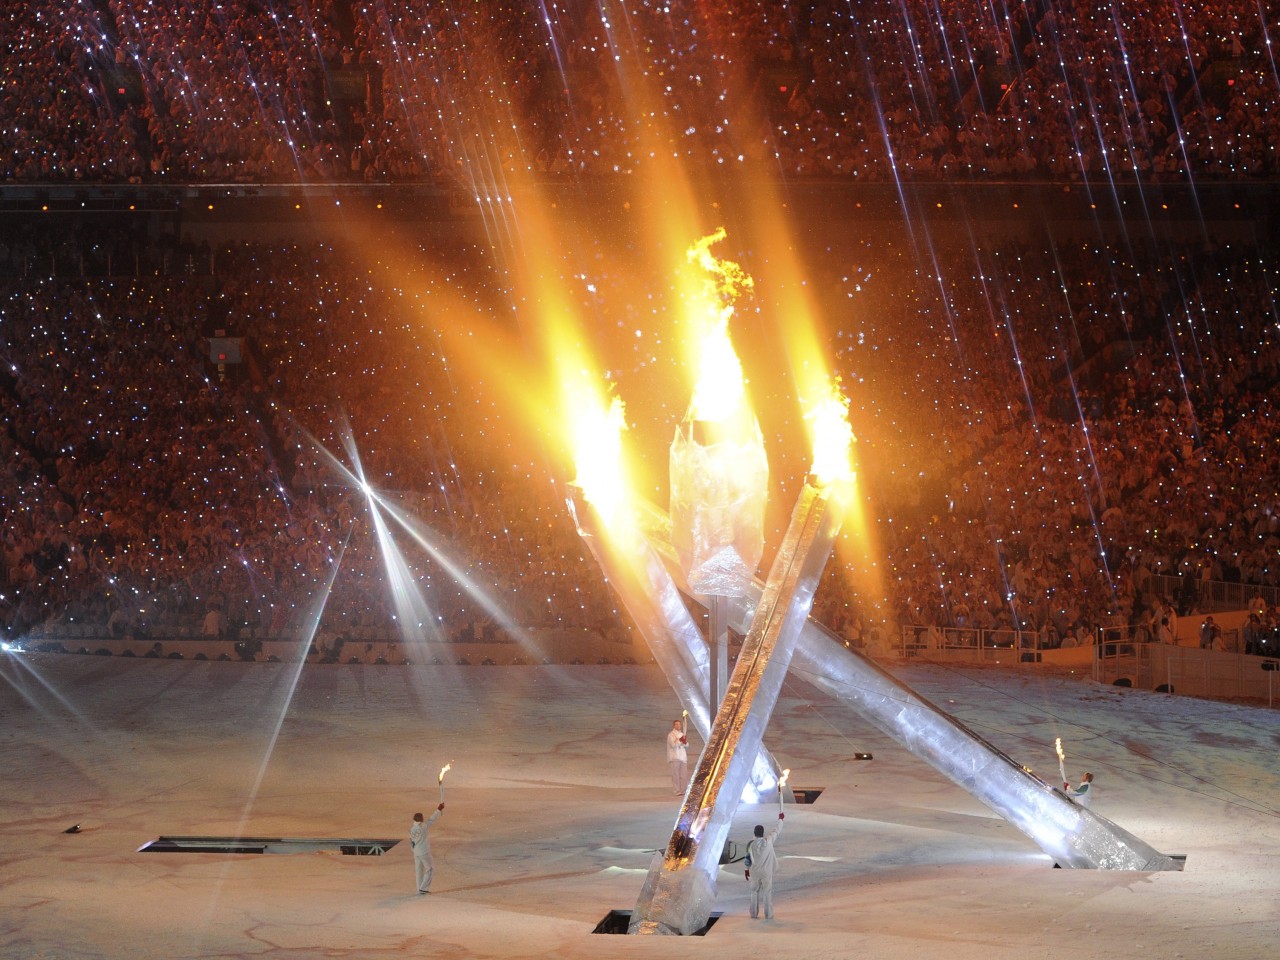 Олимпийский огонь современных игр зажигается. Зажжение олимпийского огня. Церемония зажжения олимпийского огня. Олимпийский огонь Ванкувер 2010. Зажжение олимпийского огня в Барселоне 1992.